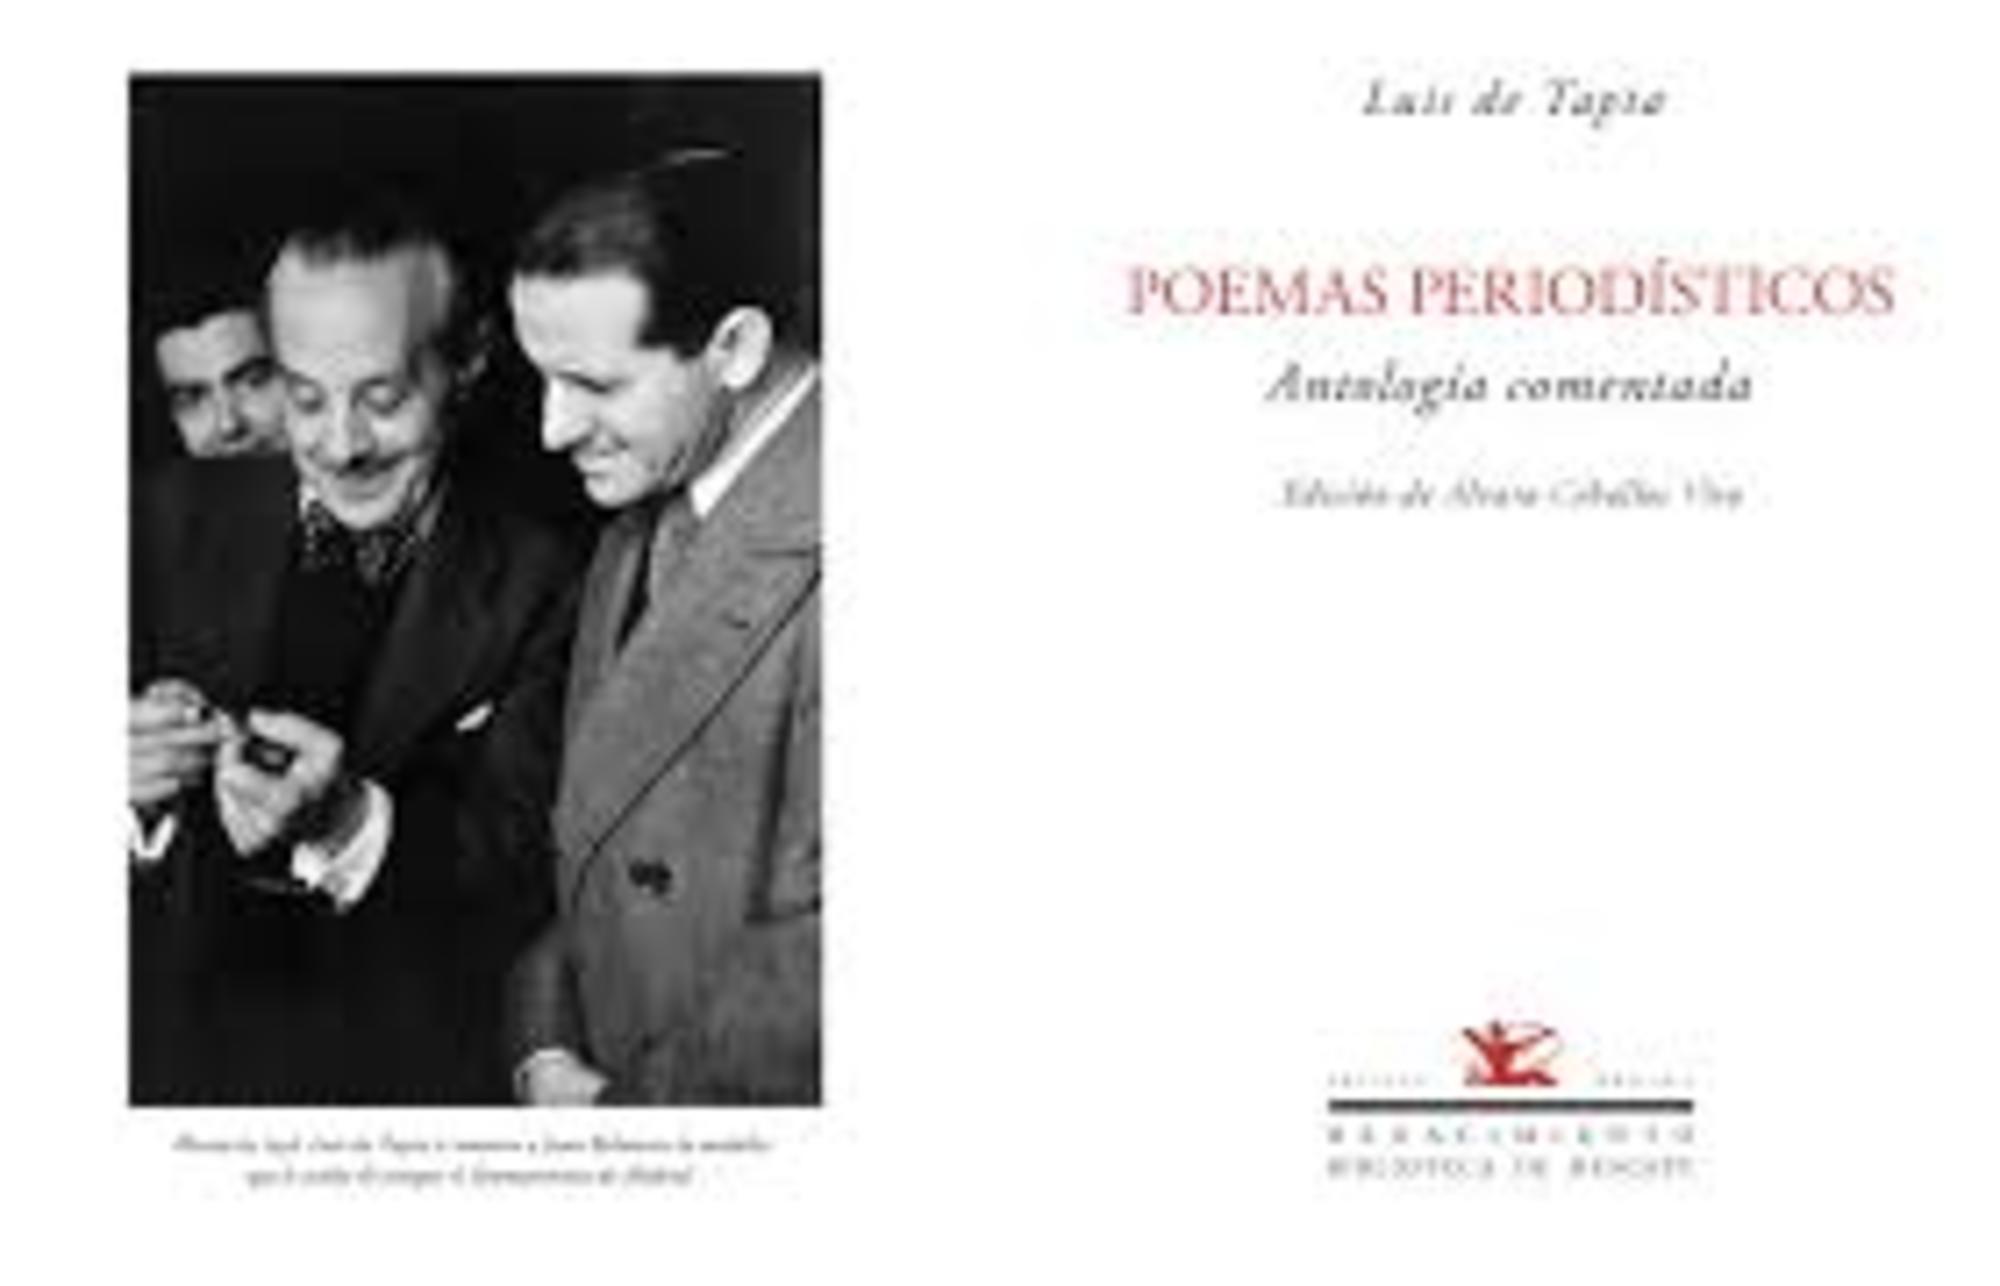 Antología de poemas periodísticos de Luis de Tapia